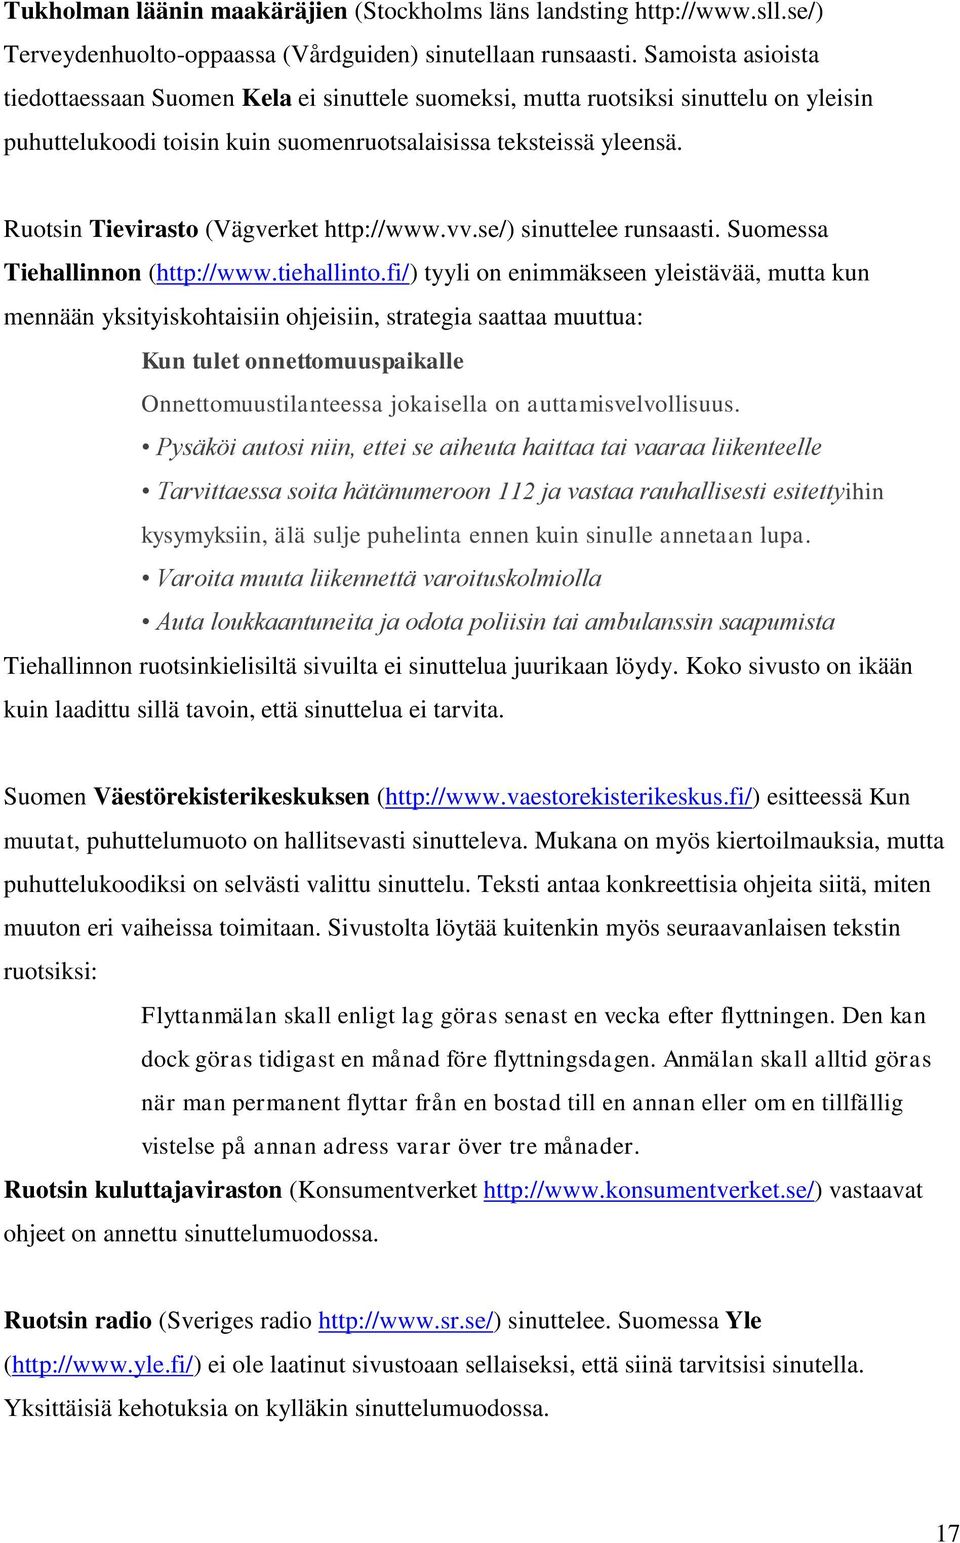 Ruotsin Tievirasto (Vägverket http://www.vv.se/) sinuttelee runsaasti. Suomessa Tiehallinnon (http://www.tiehallinto.